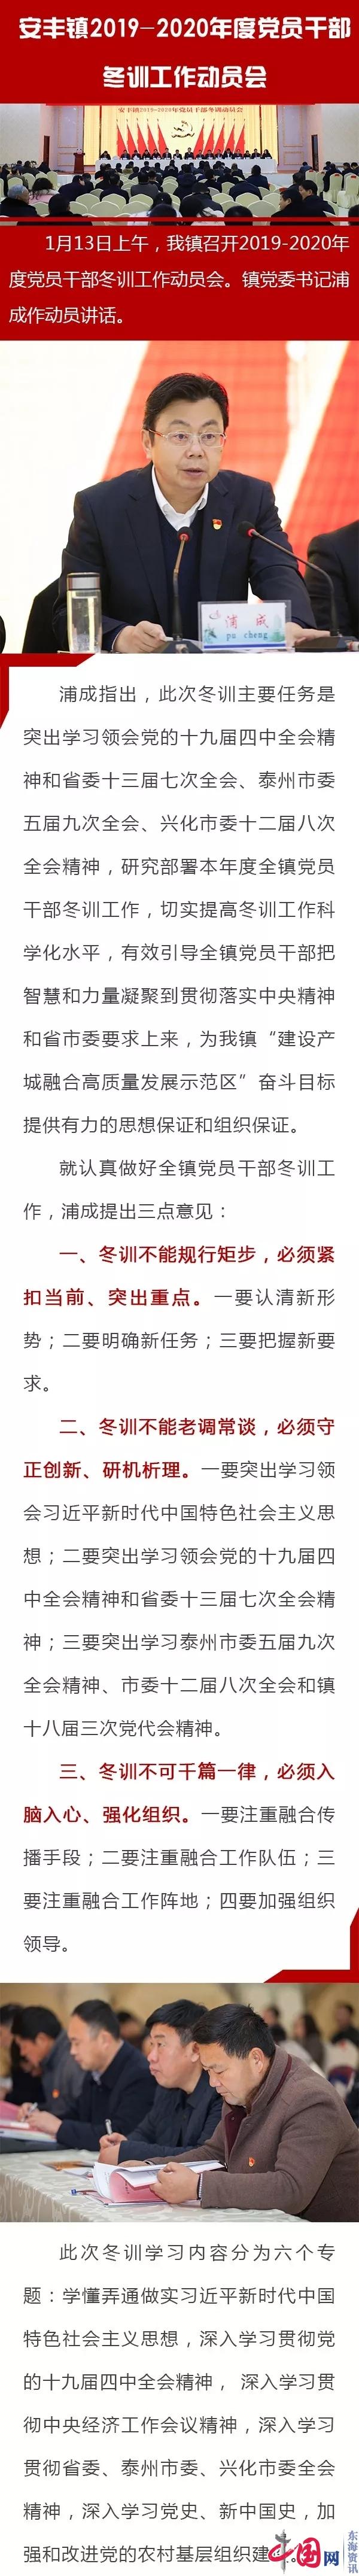 兴化市安丰镇召开2019-2020年度党员干部 冬训工作动员会